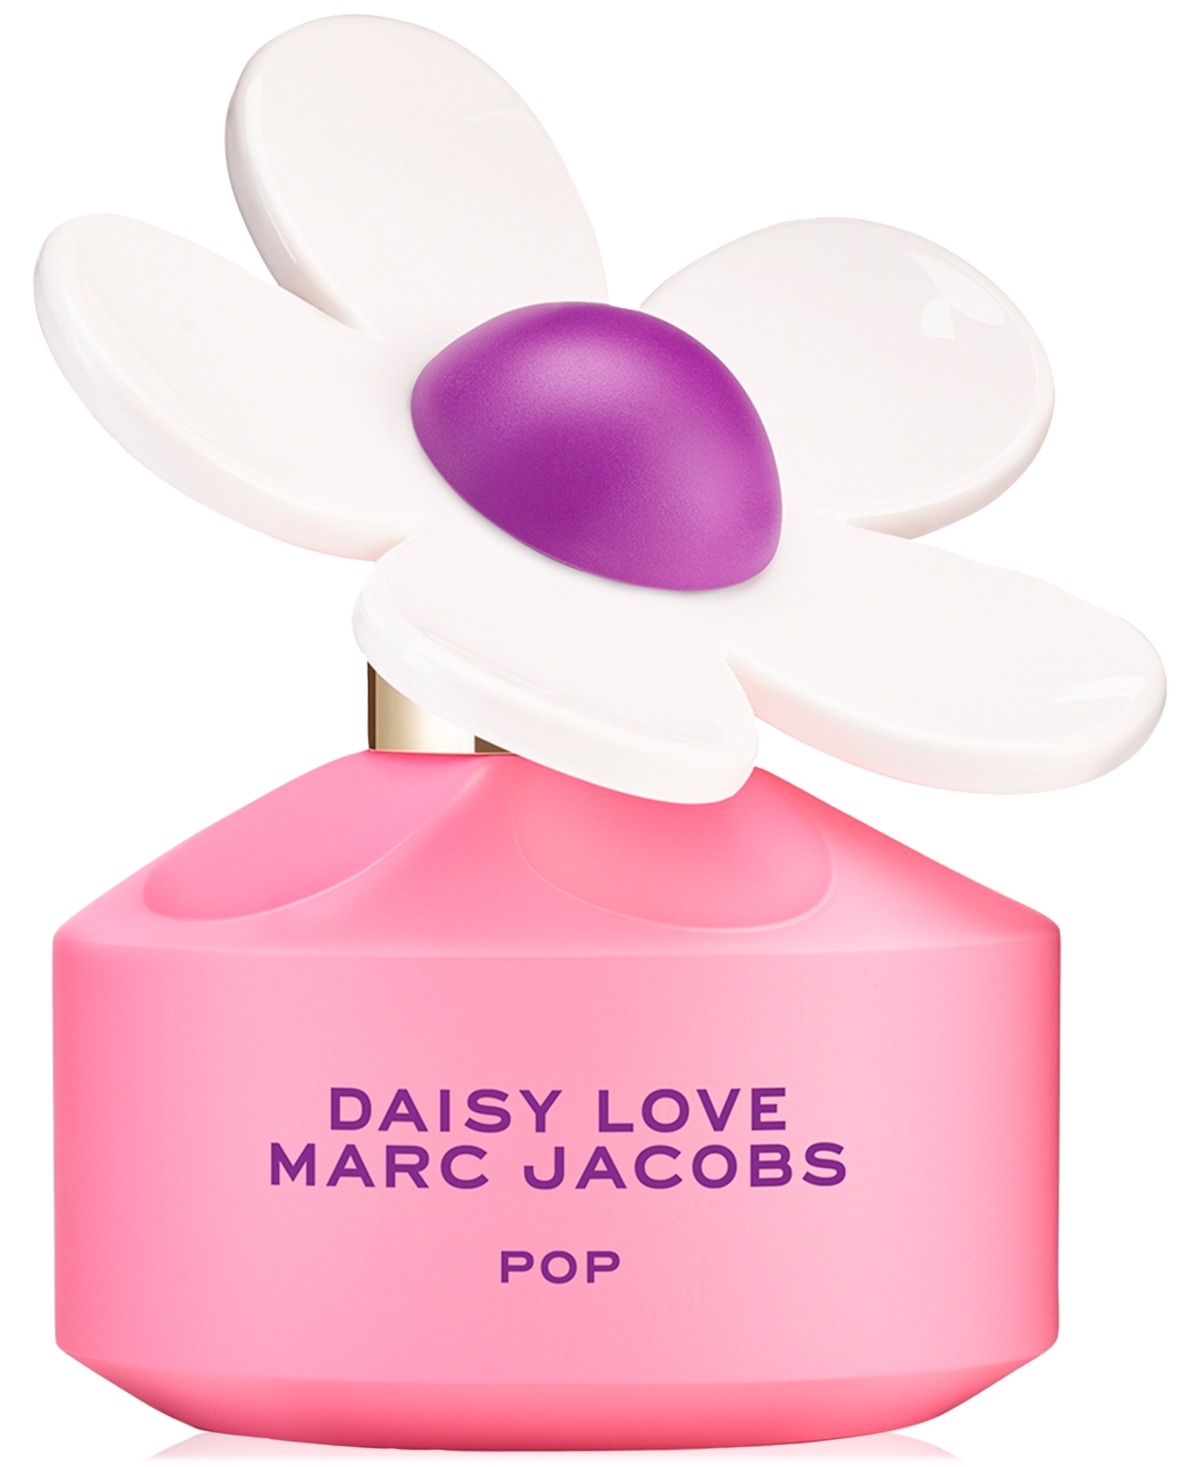 Daisy Love Pop Eau de Toilette, 1.6 oz.